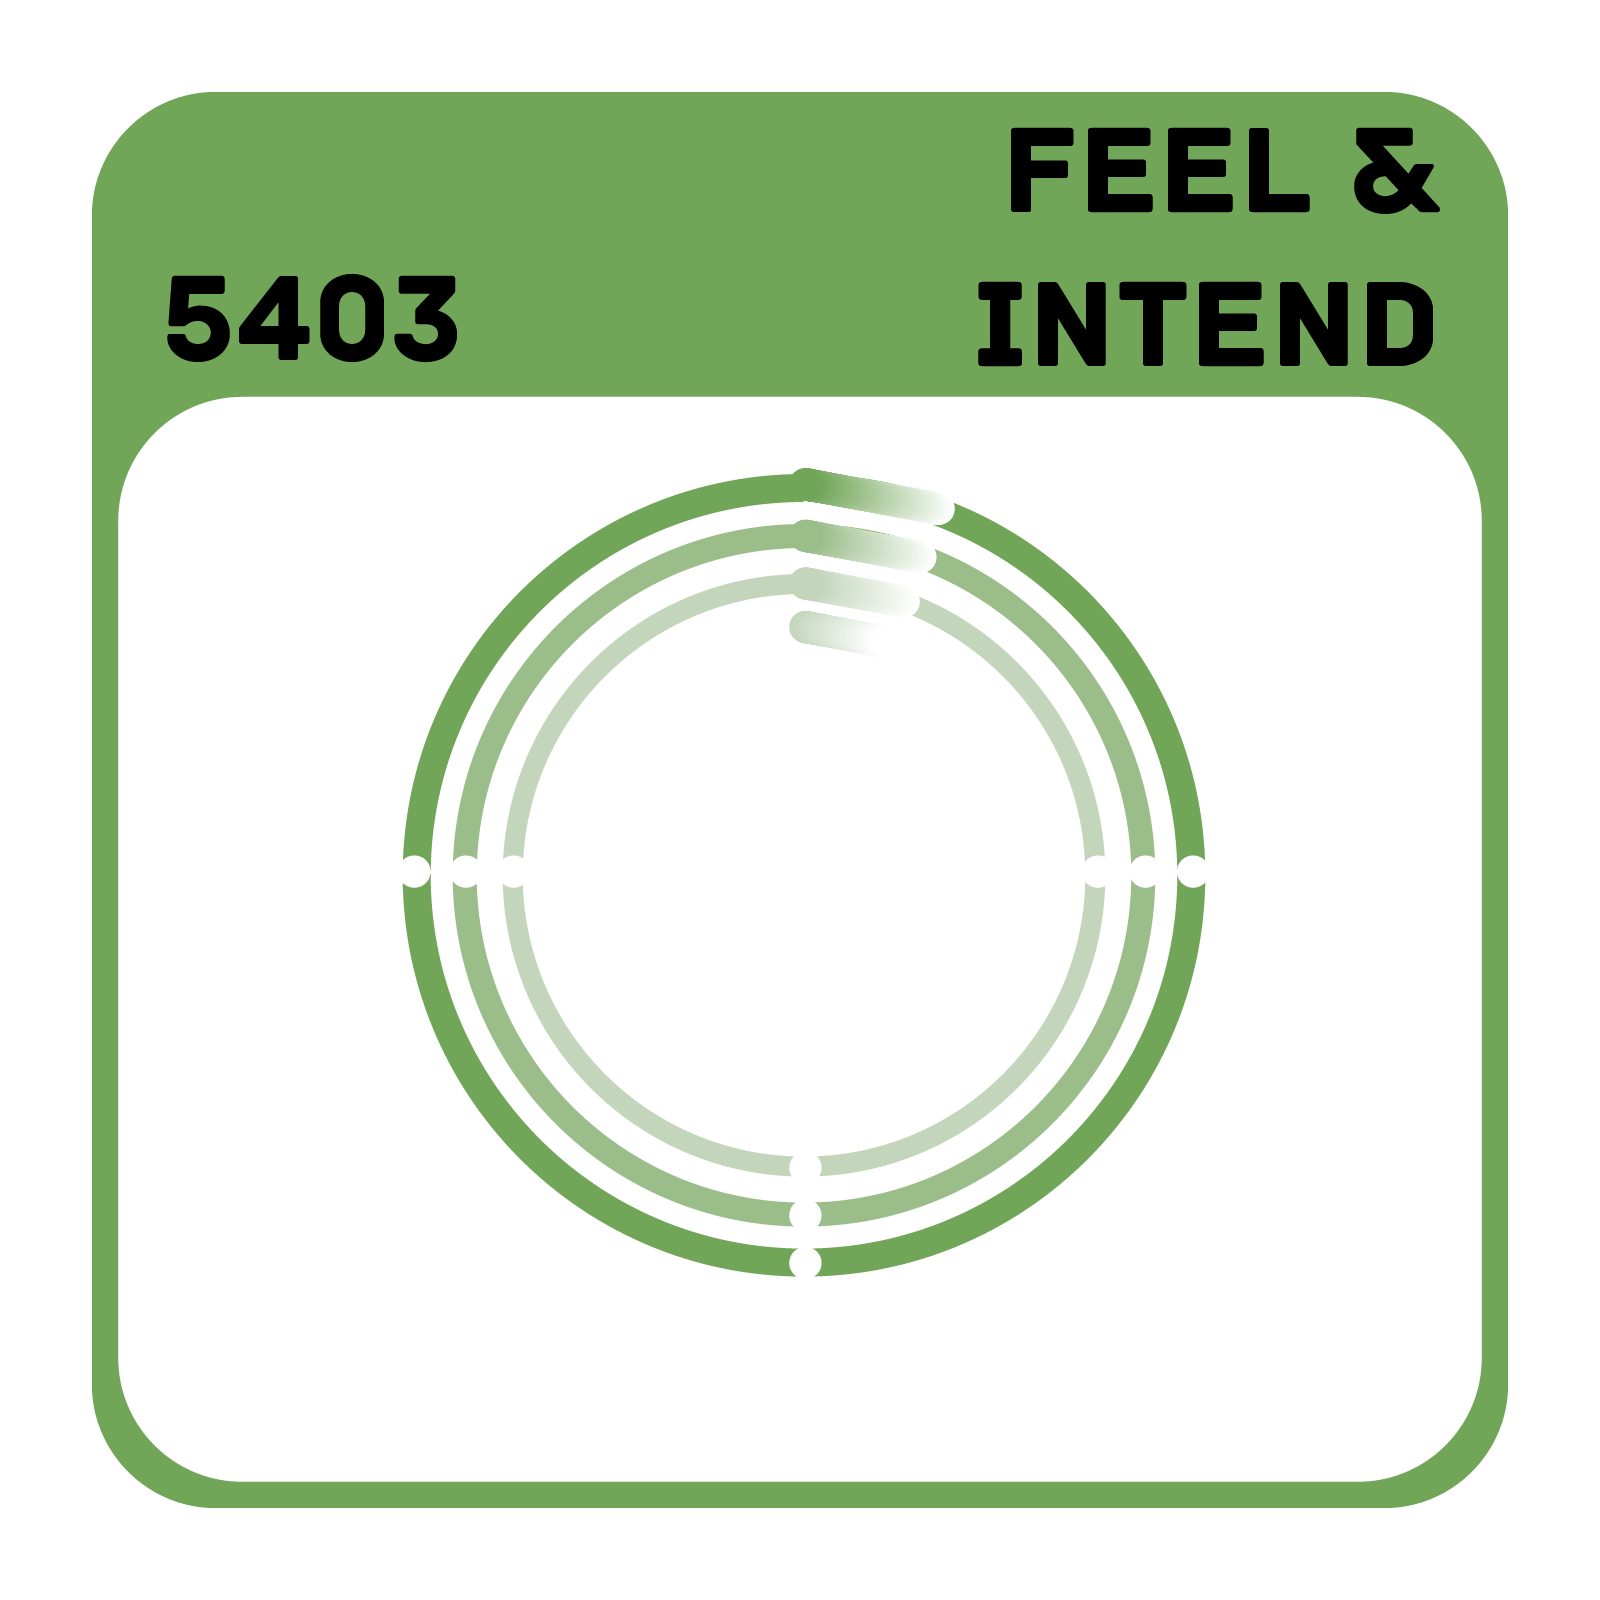 5403 Building Trust